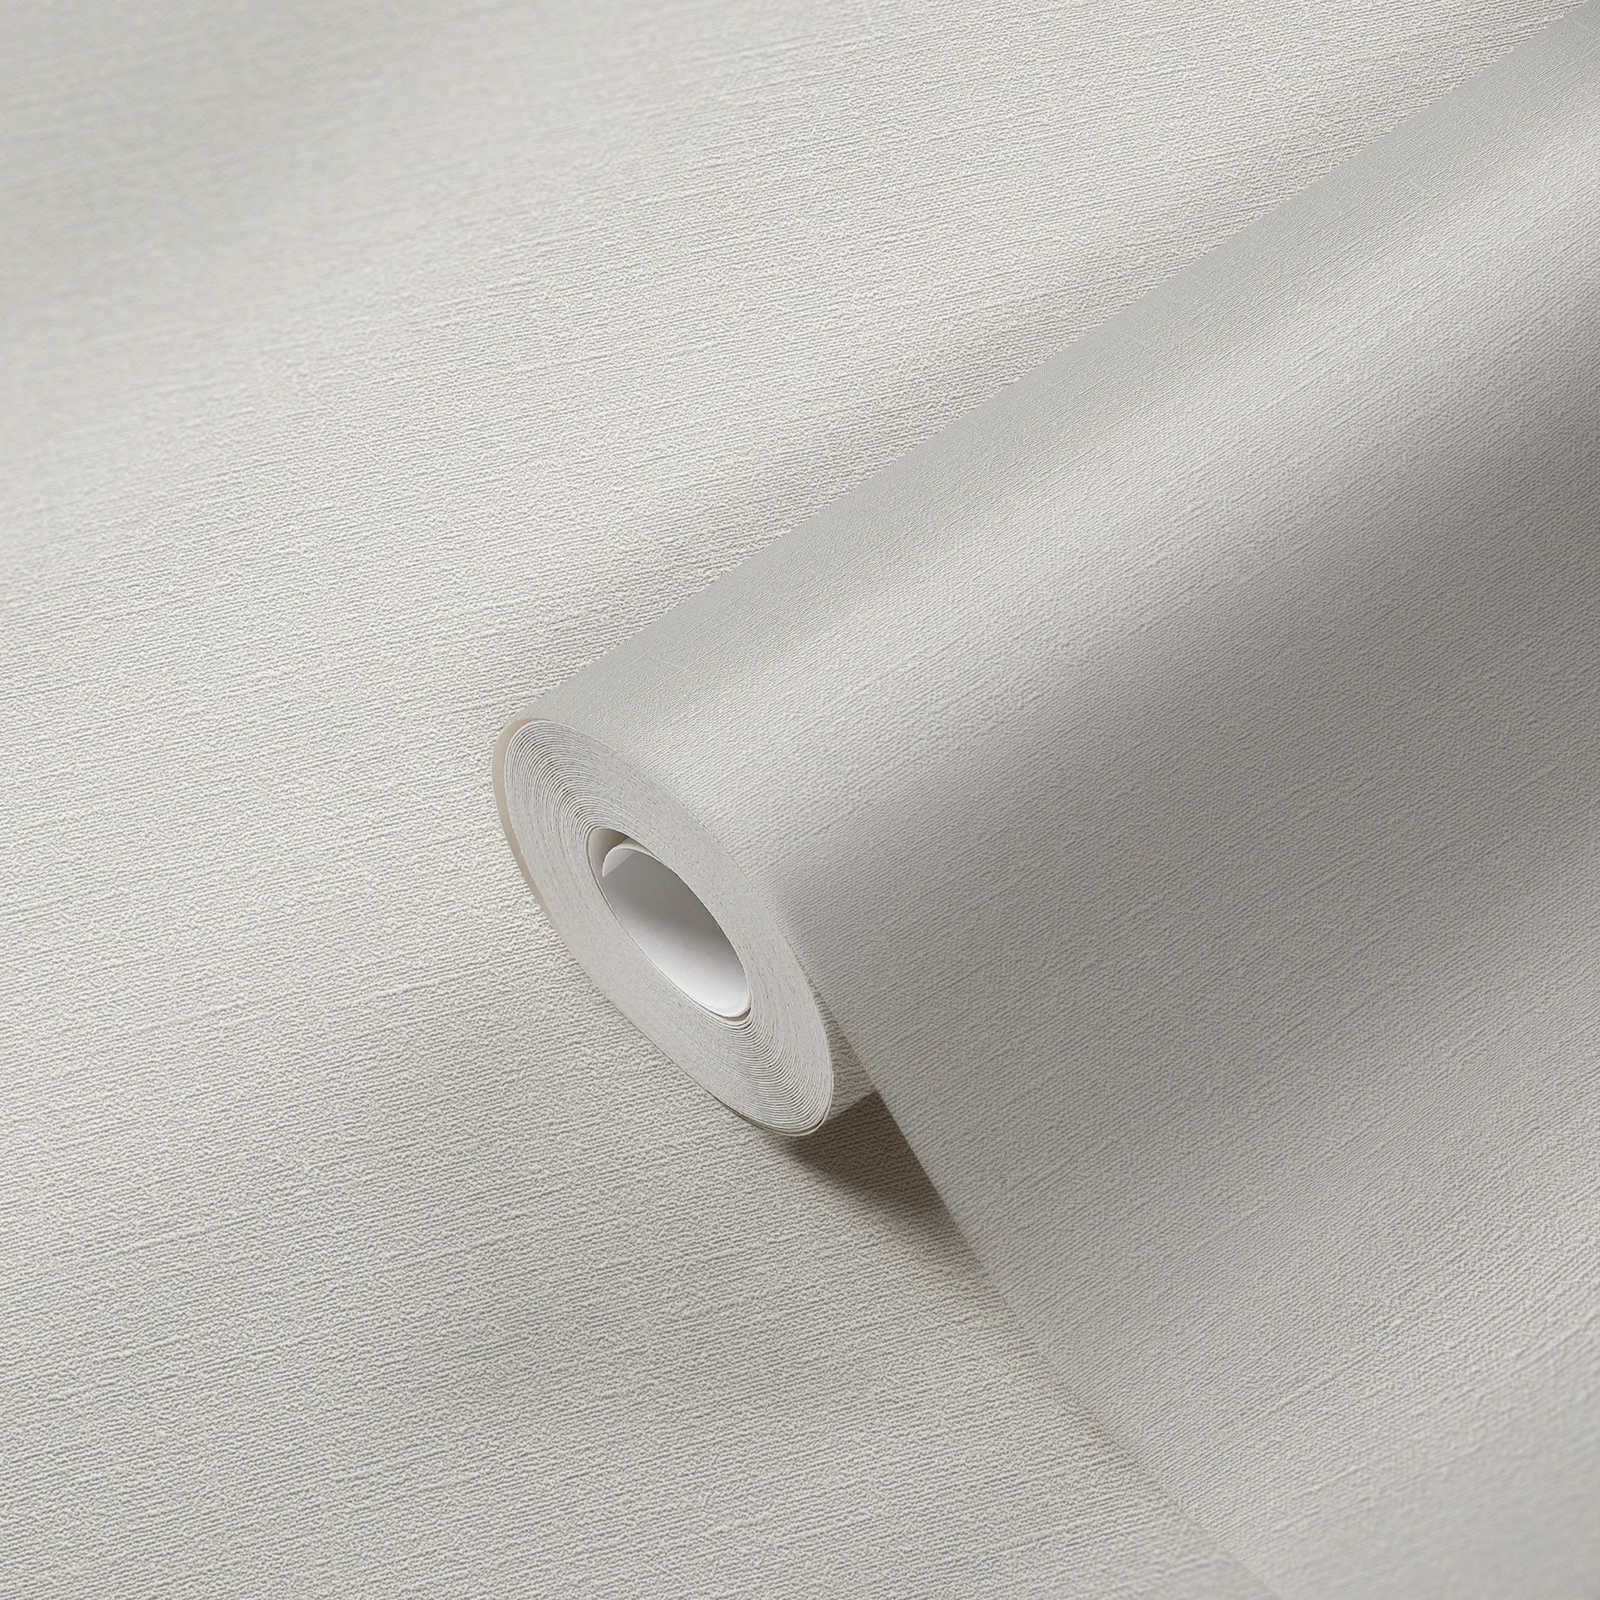             PVC-vrij behang met fijne structuur - grijs, wit
        